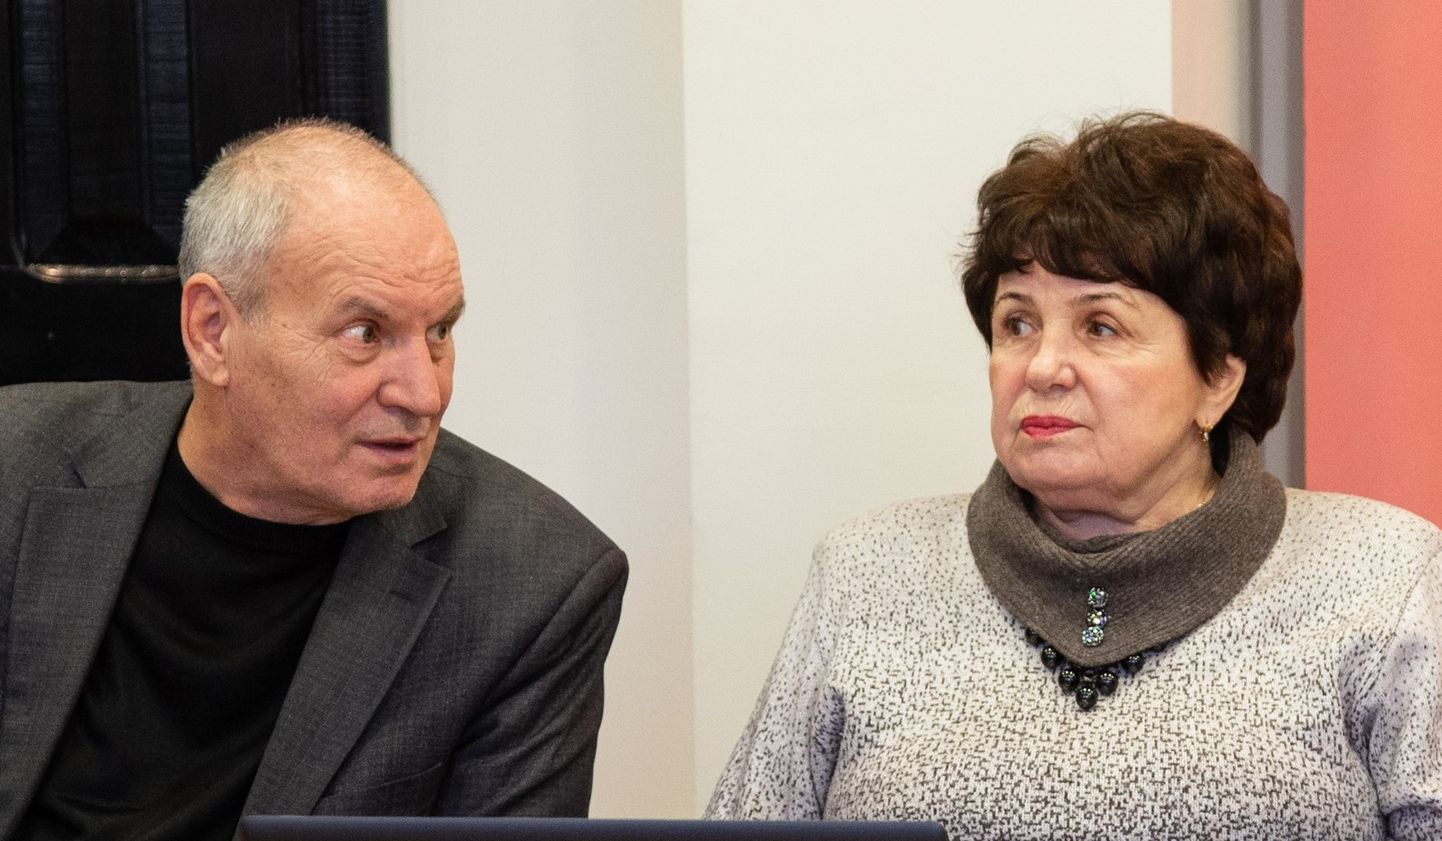 Palju aastaid linnavolikogus Keskerakonda esindanud Vladmir Evve ja Anna Rentik on nüüdsest valimisliidu Restart Kohtla-Järve fraktsiooni liikmed.